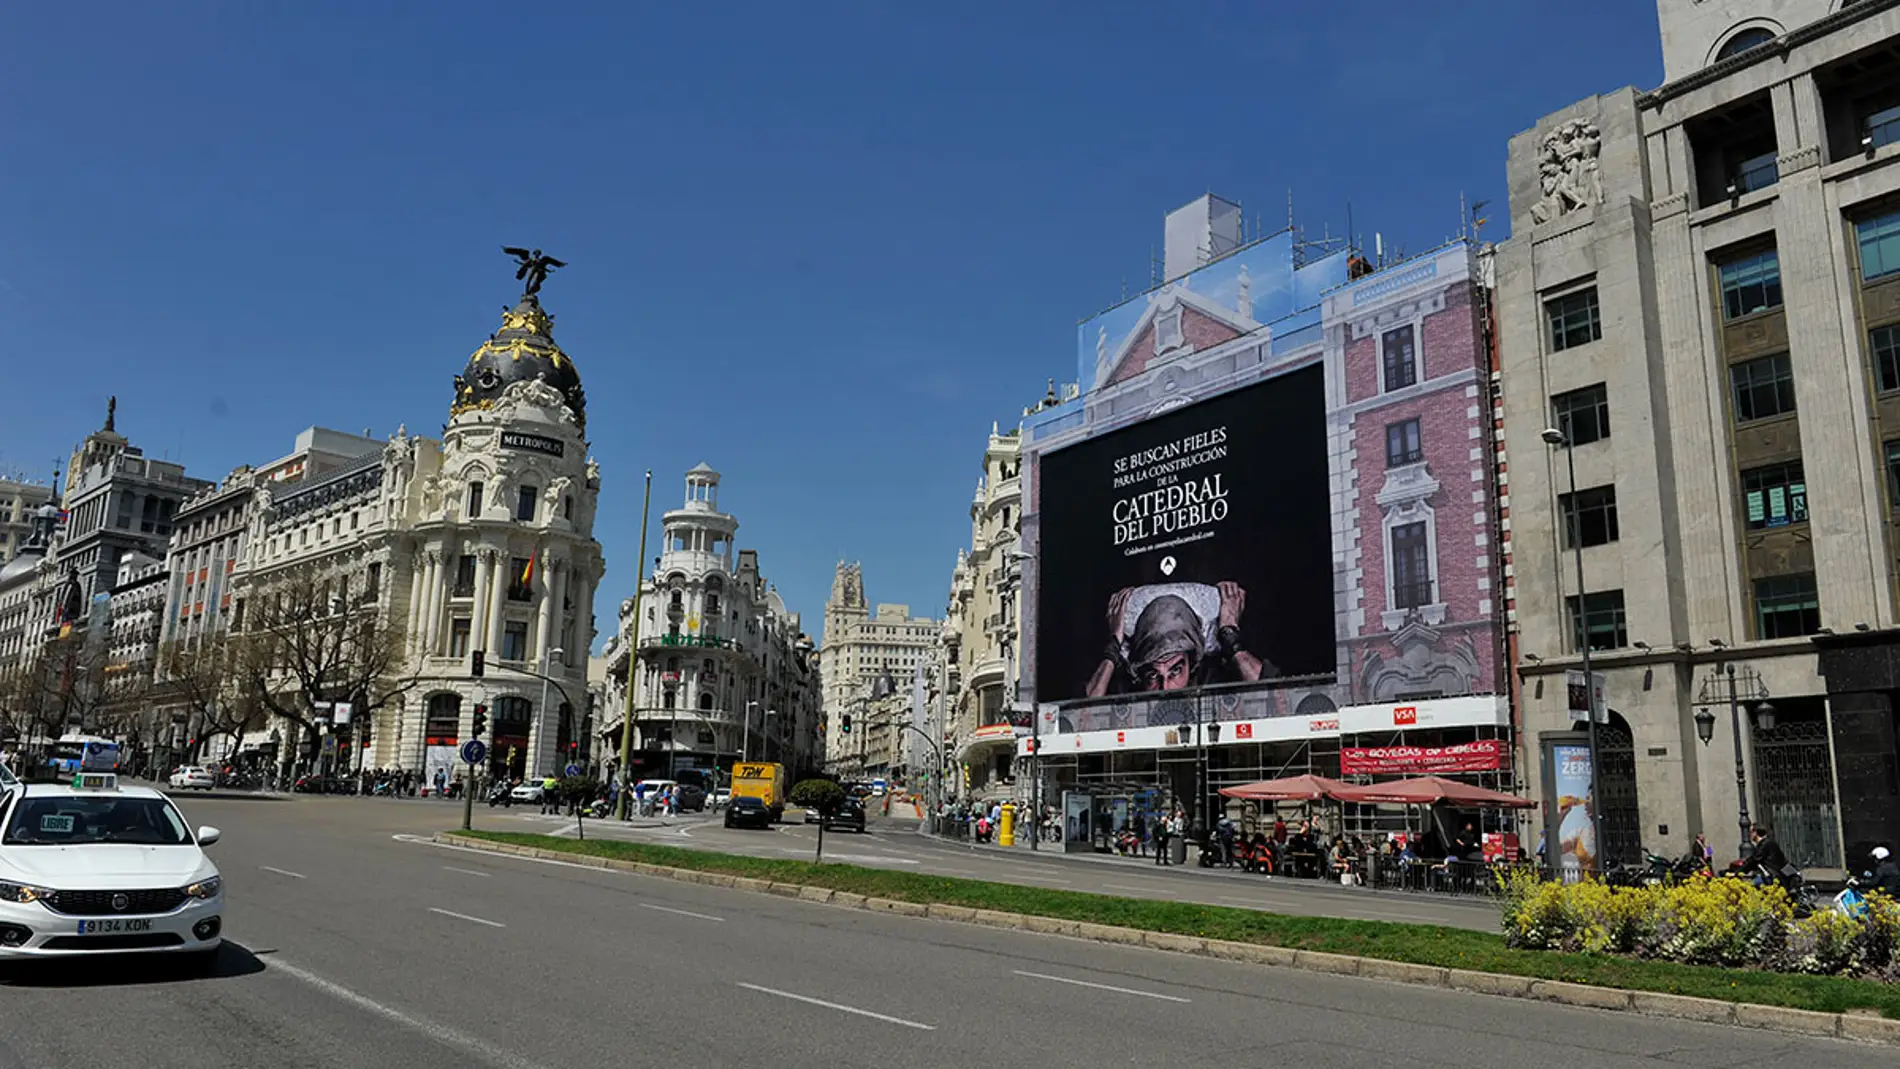 La Catedral del Mar busca fieles en pleno centro de Madrid